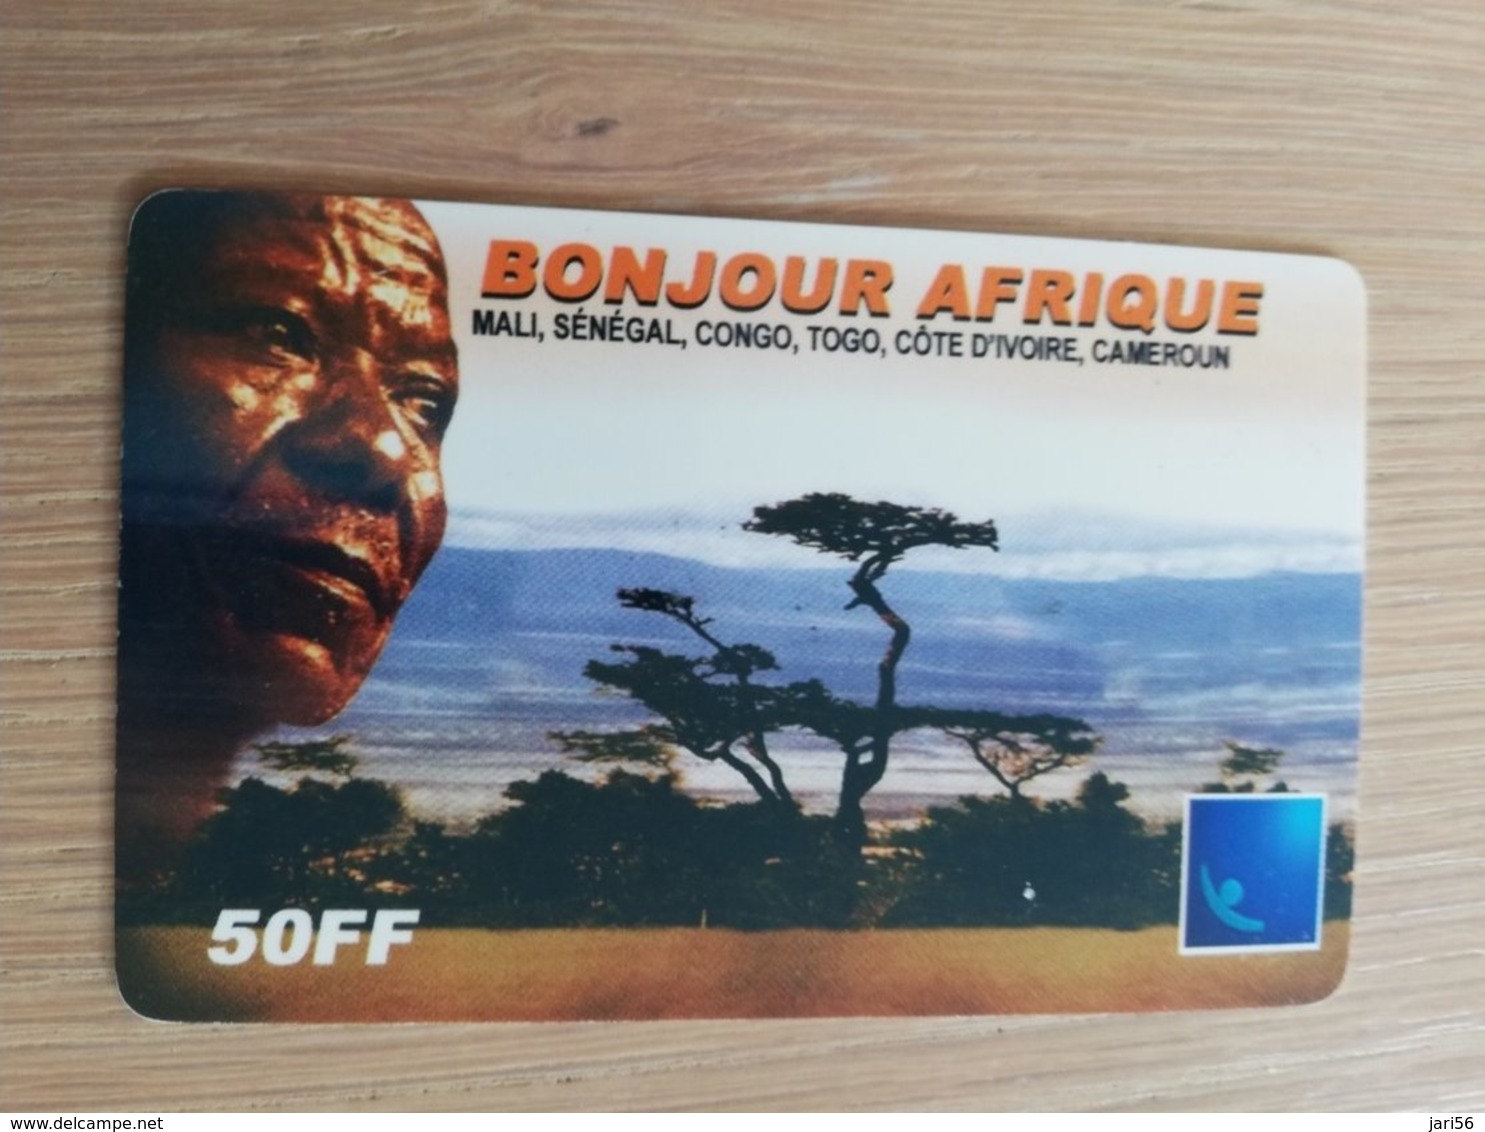 FRANCE/FRANKRIJK  50 FF BONJOUR AFRIQUE    PREPAID  USED    ** 1470** - Mobicartes (GSM/SIM)